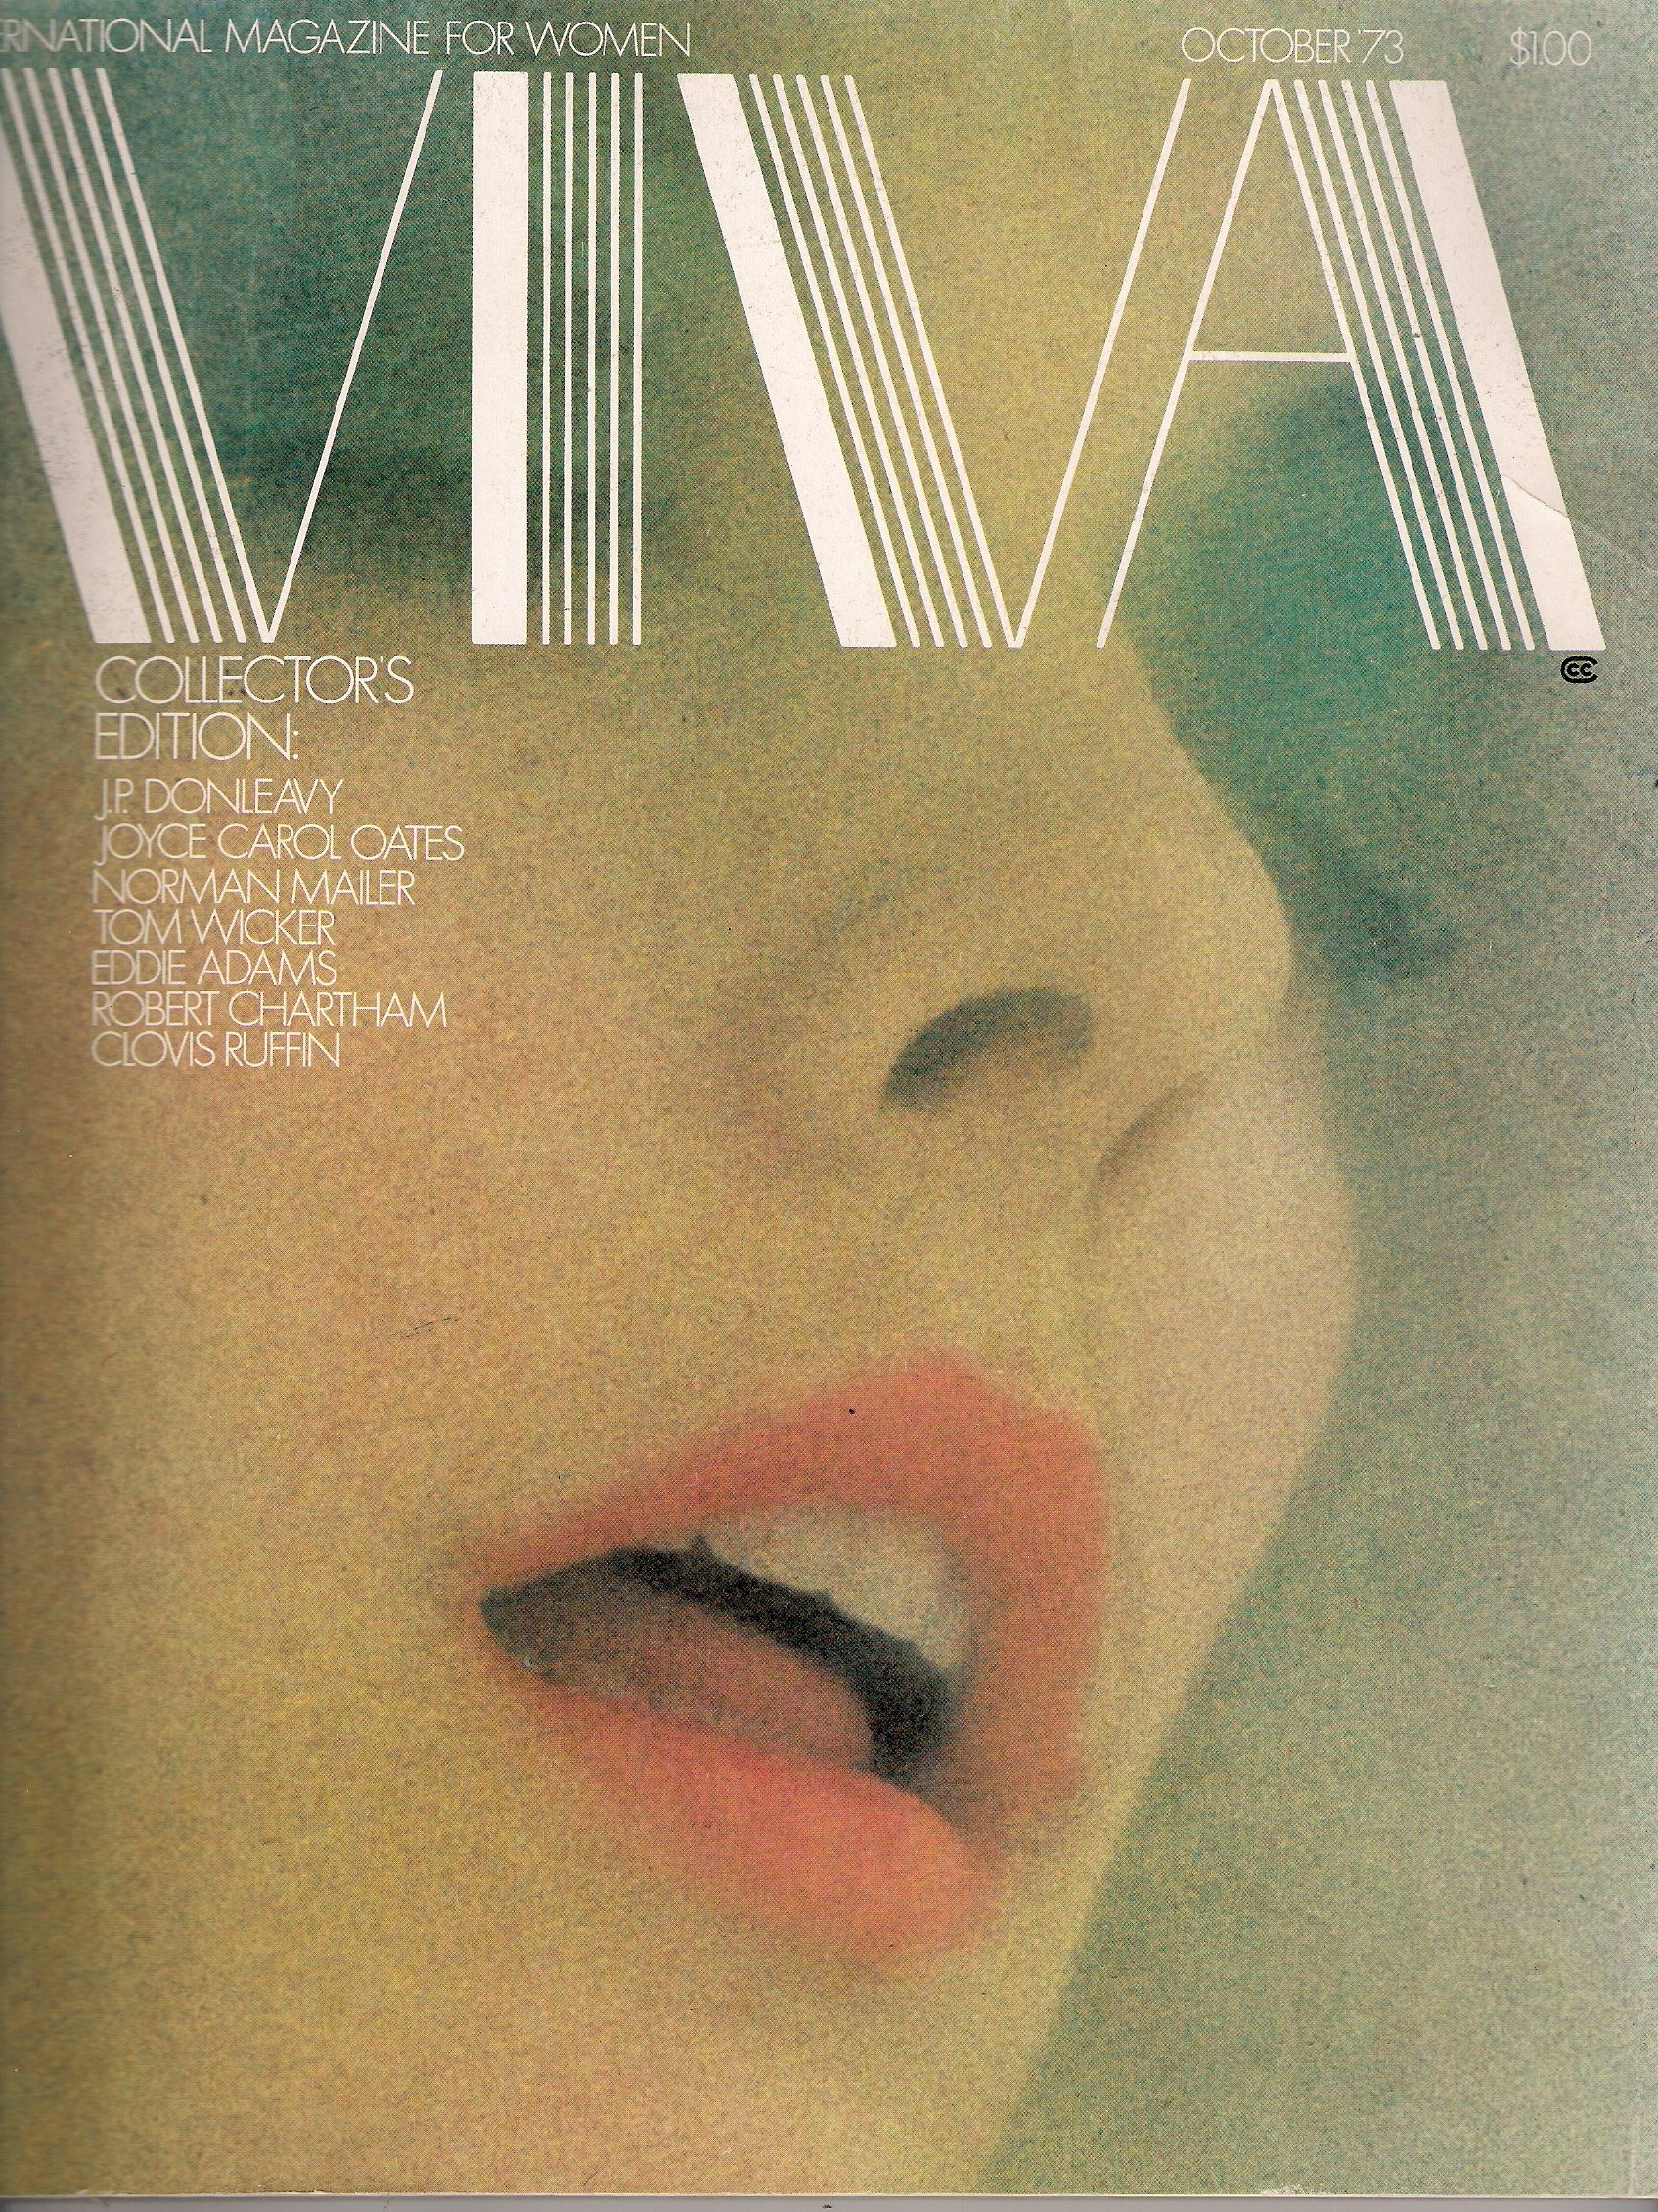 Art Kane, Viva Cover '73